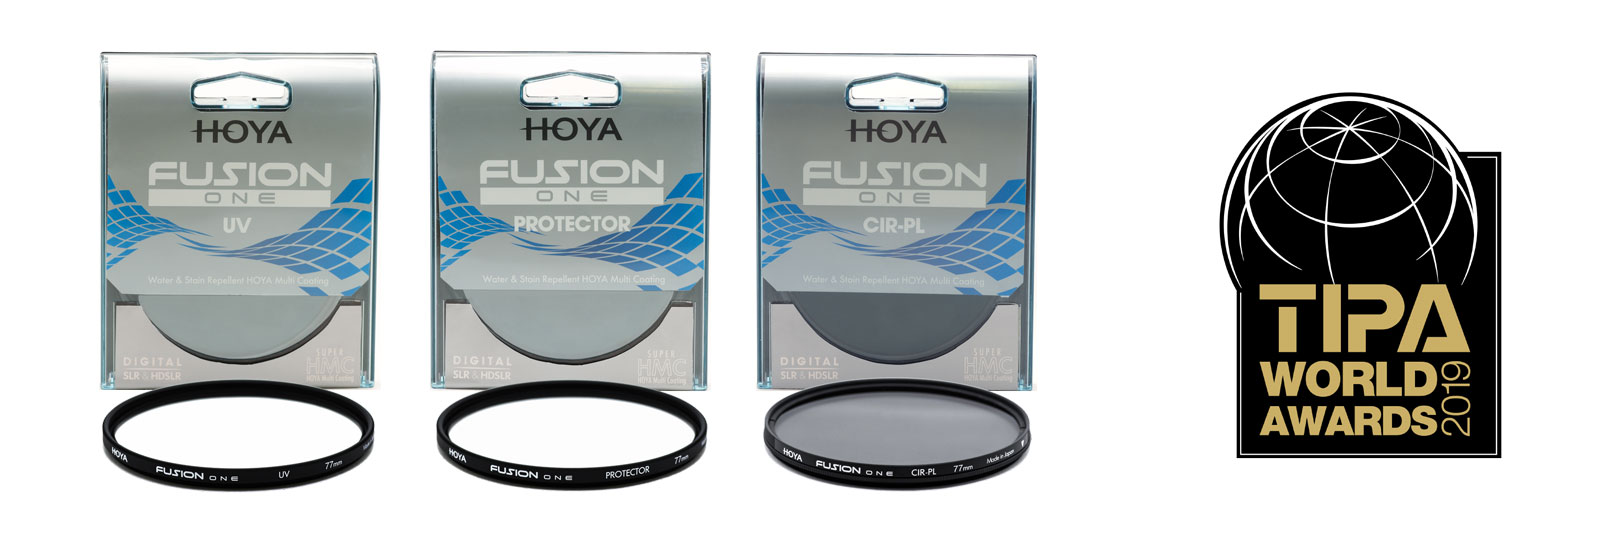 Hoya Fusion One